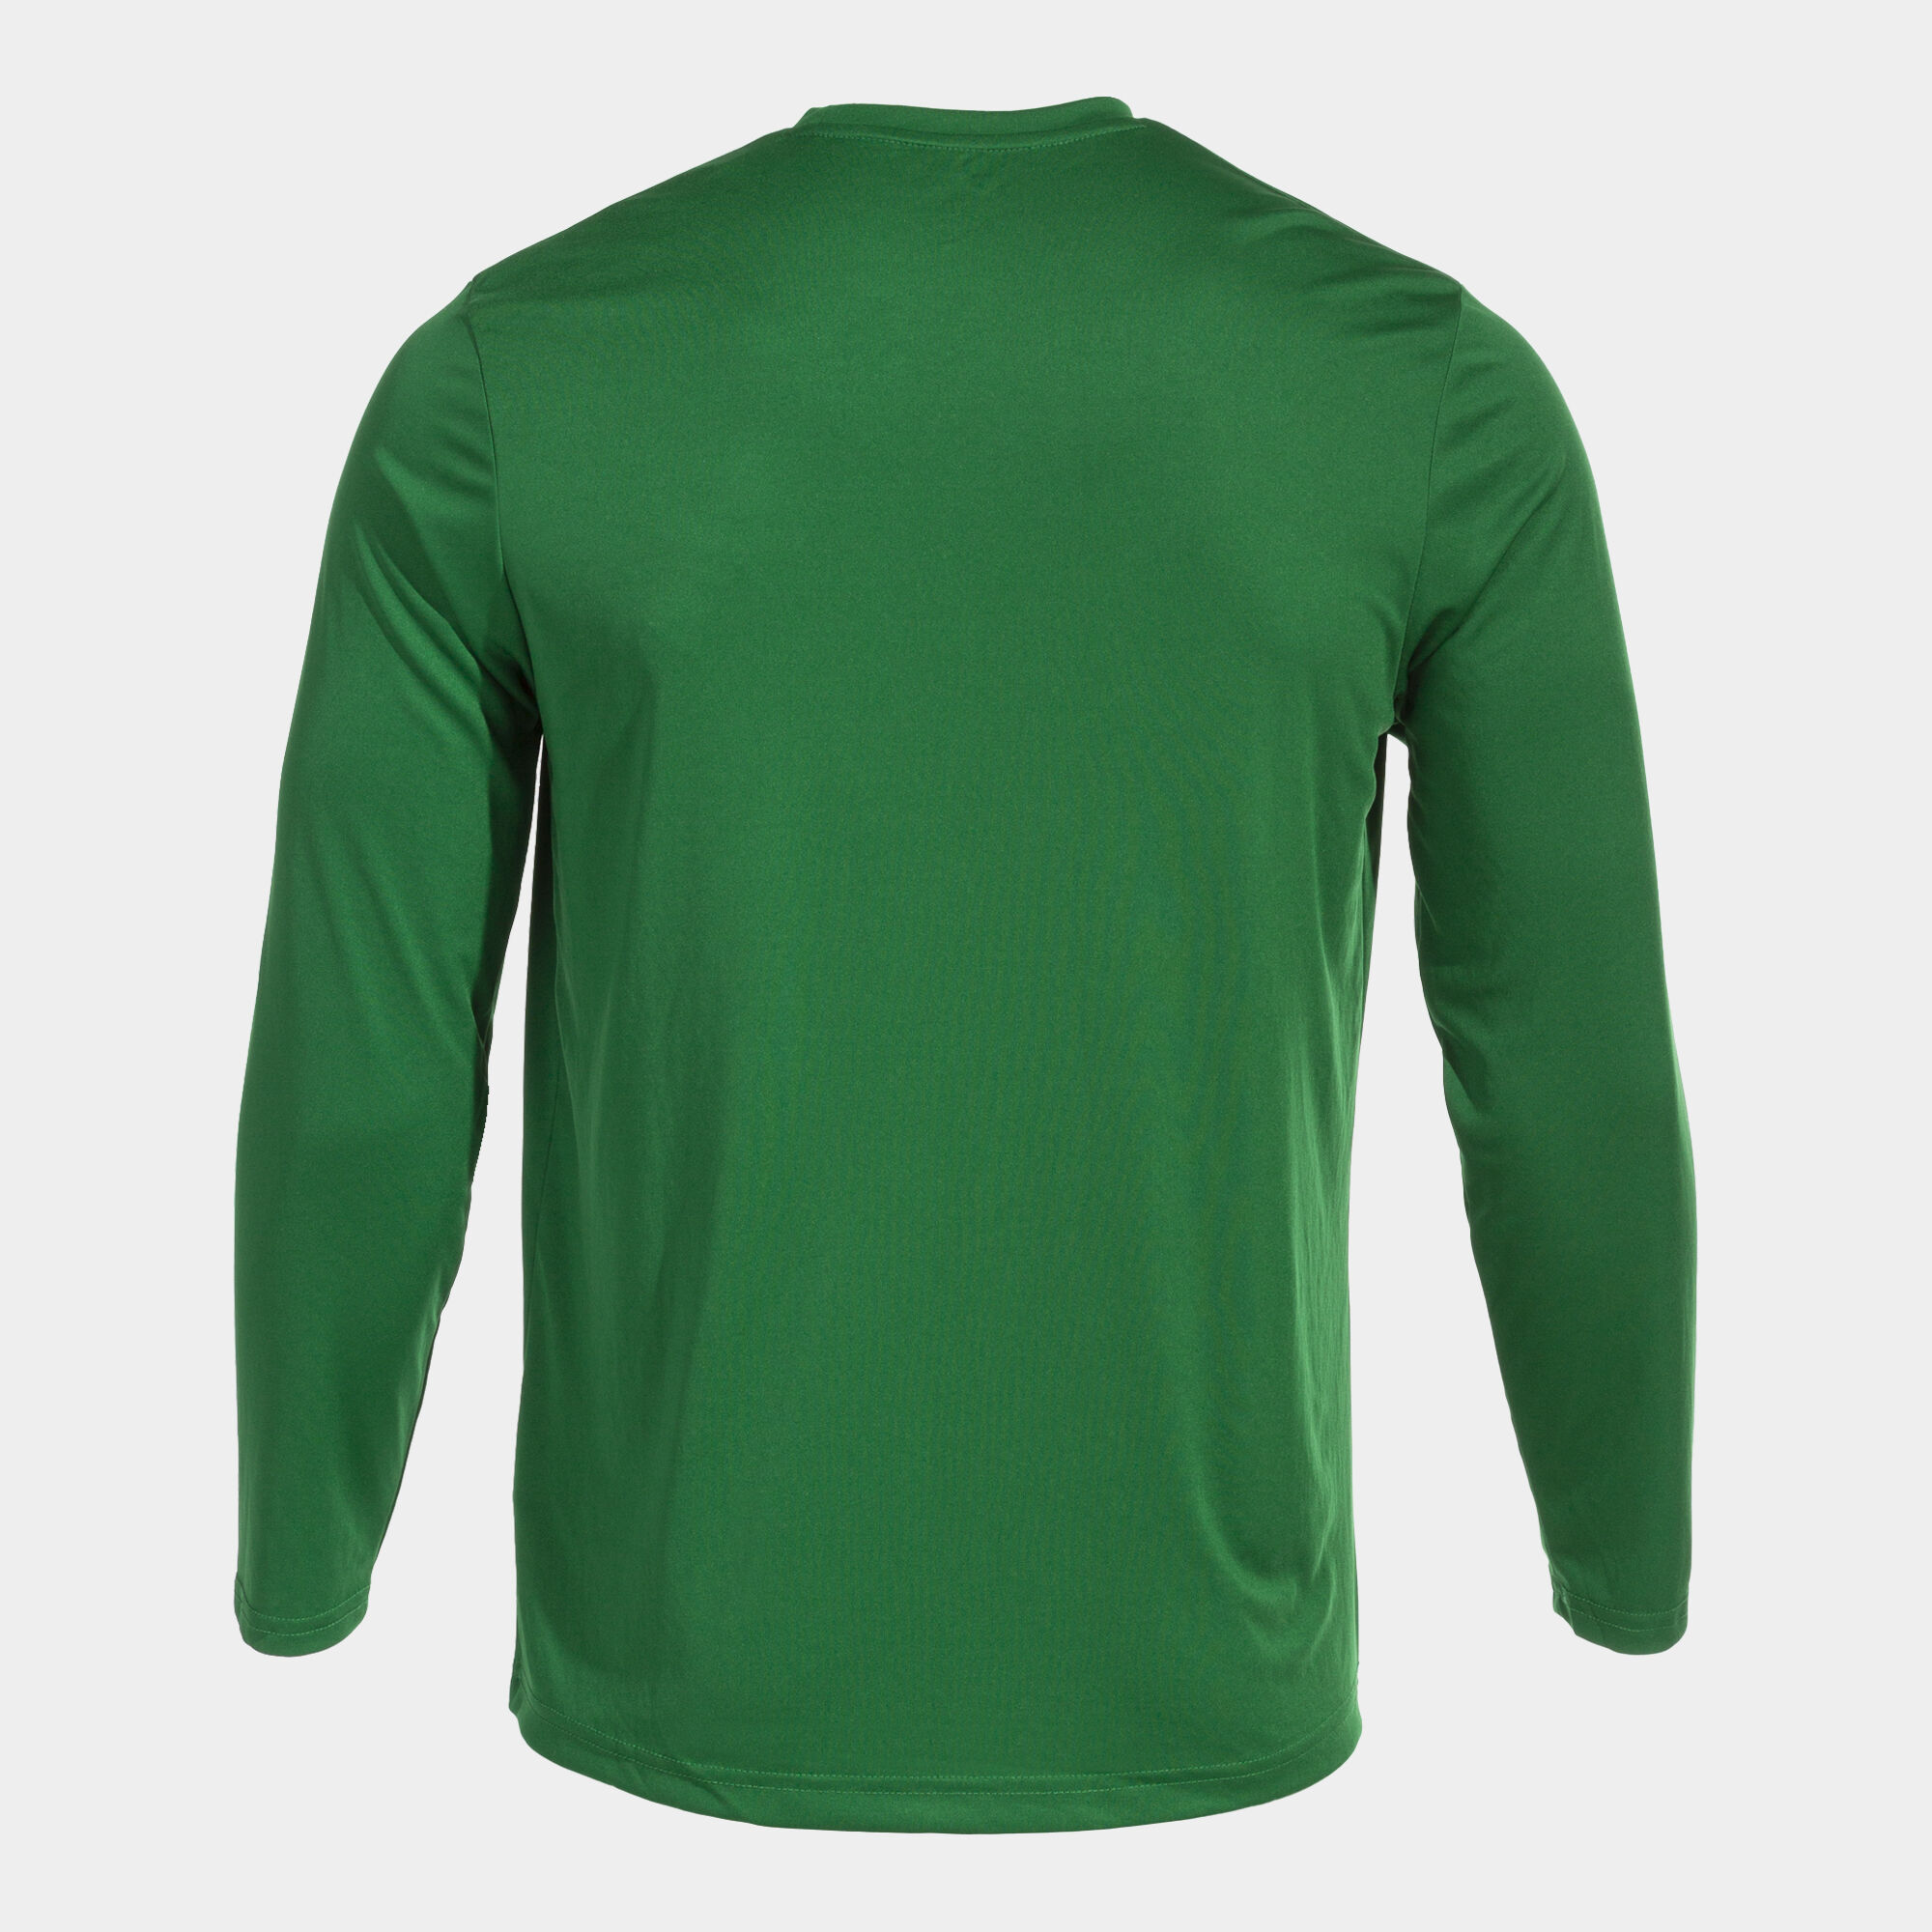 Camiseta niño Verde Fresco para personalización